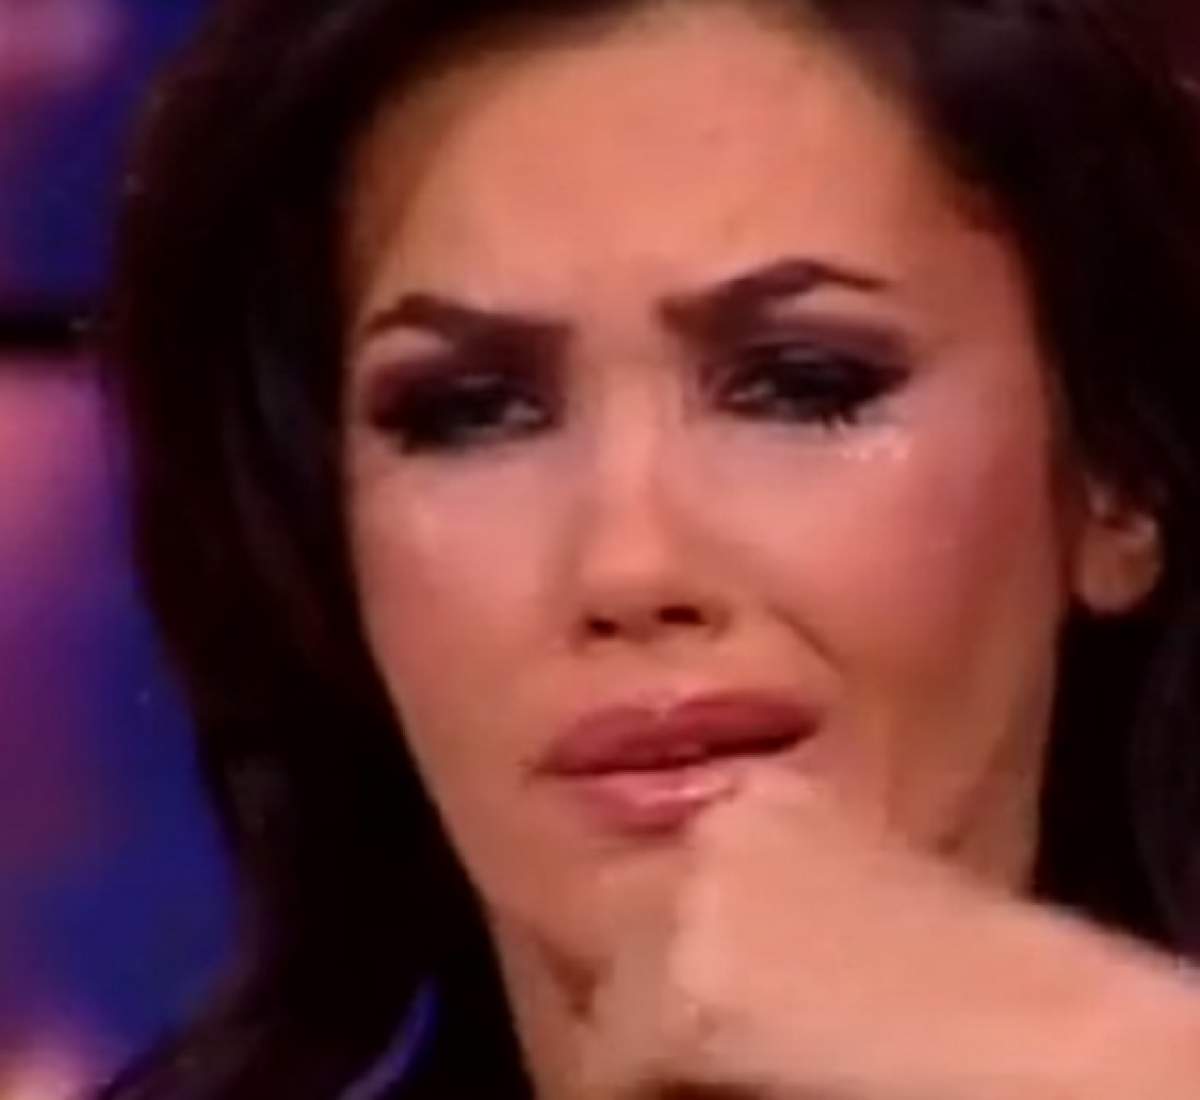 VIDEO / Oana Zăvoranu apariţie dramatică! A intrat cu ochii în lacrimi şi cu părul tăiat: "Eu mor"